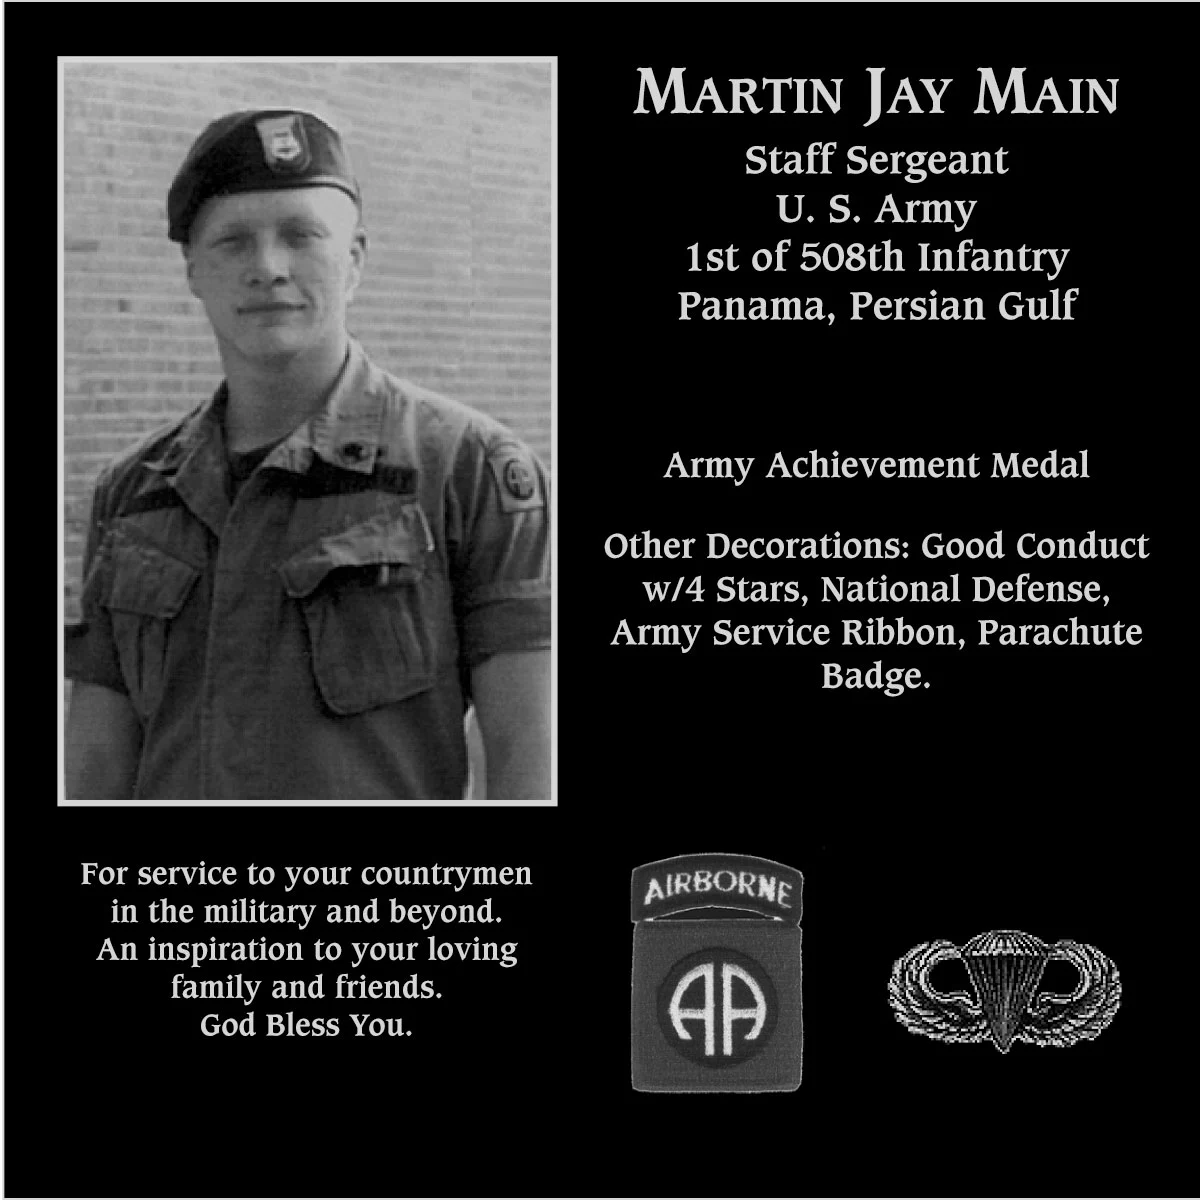 Martin Jay Main